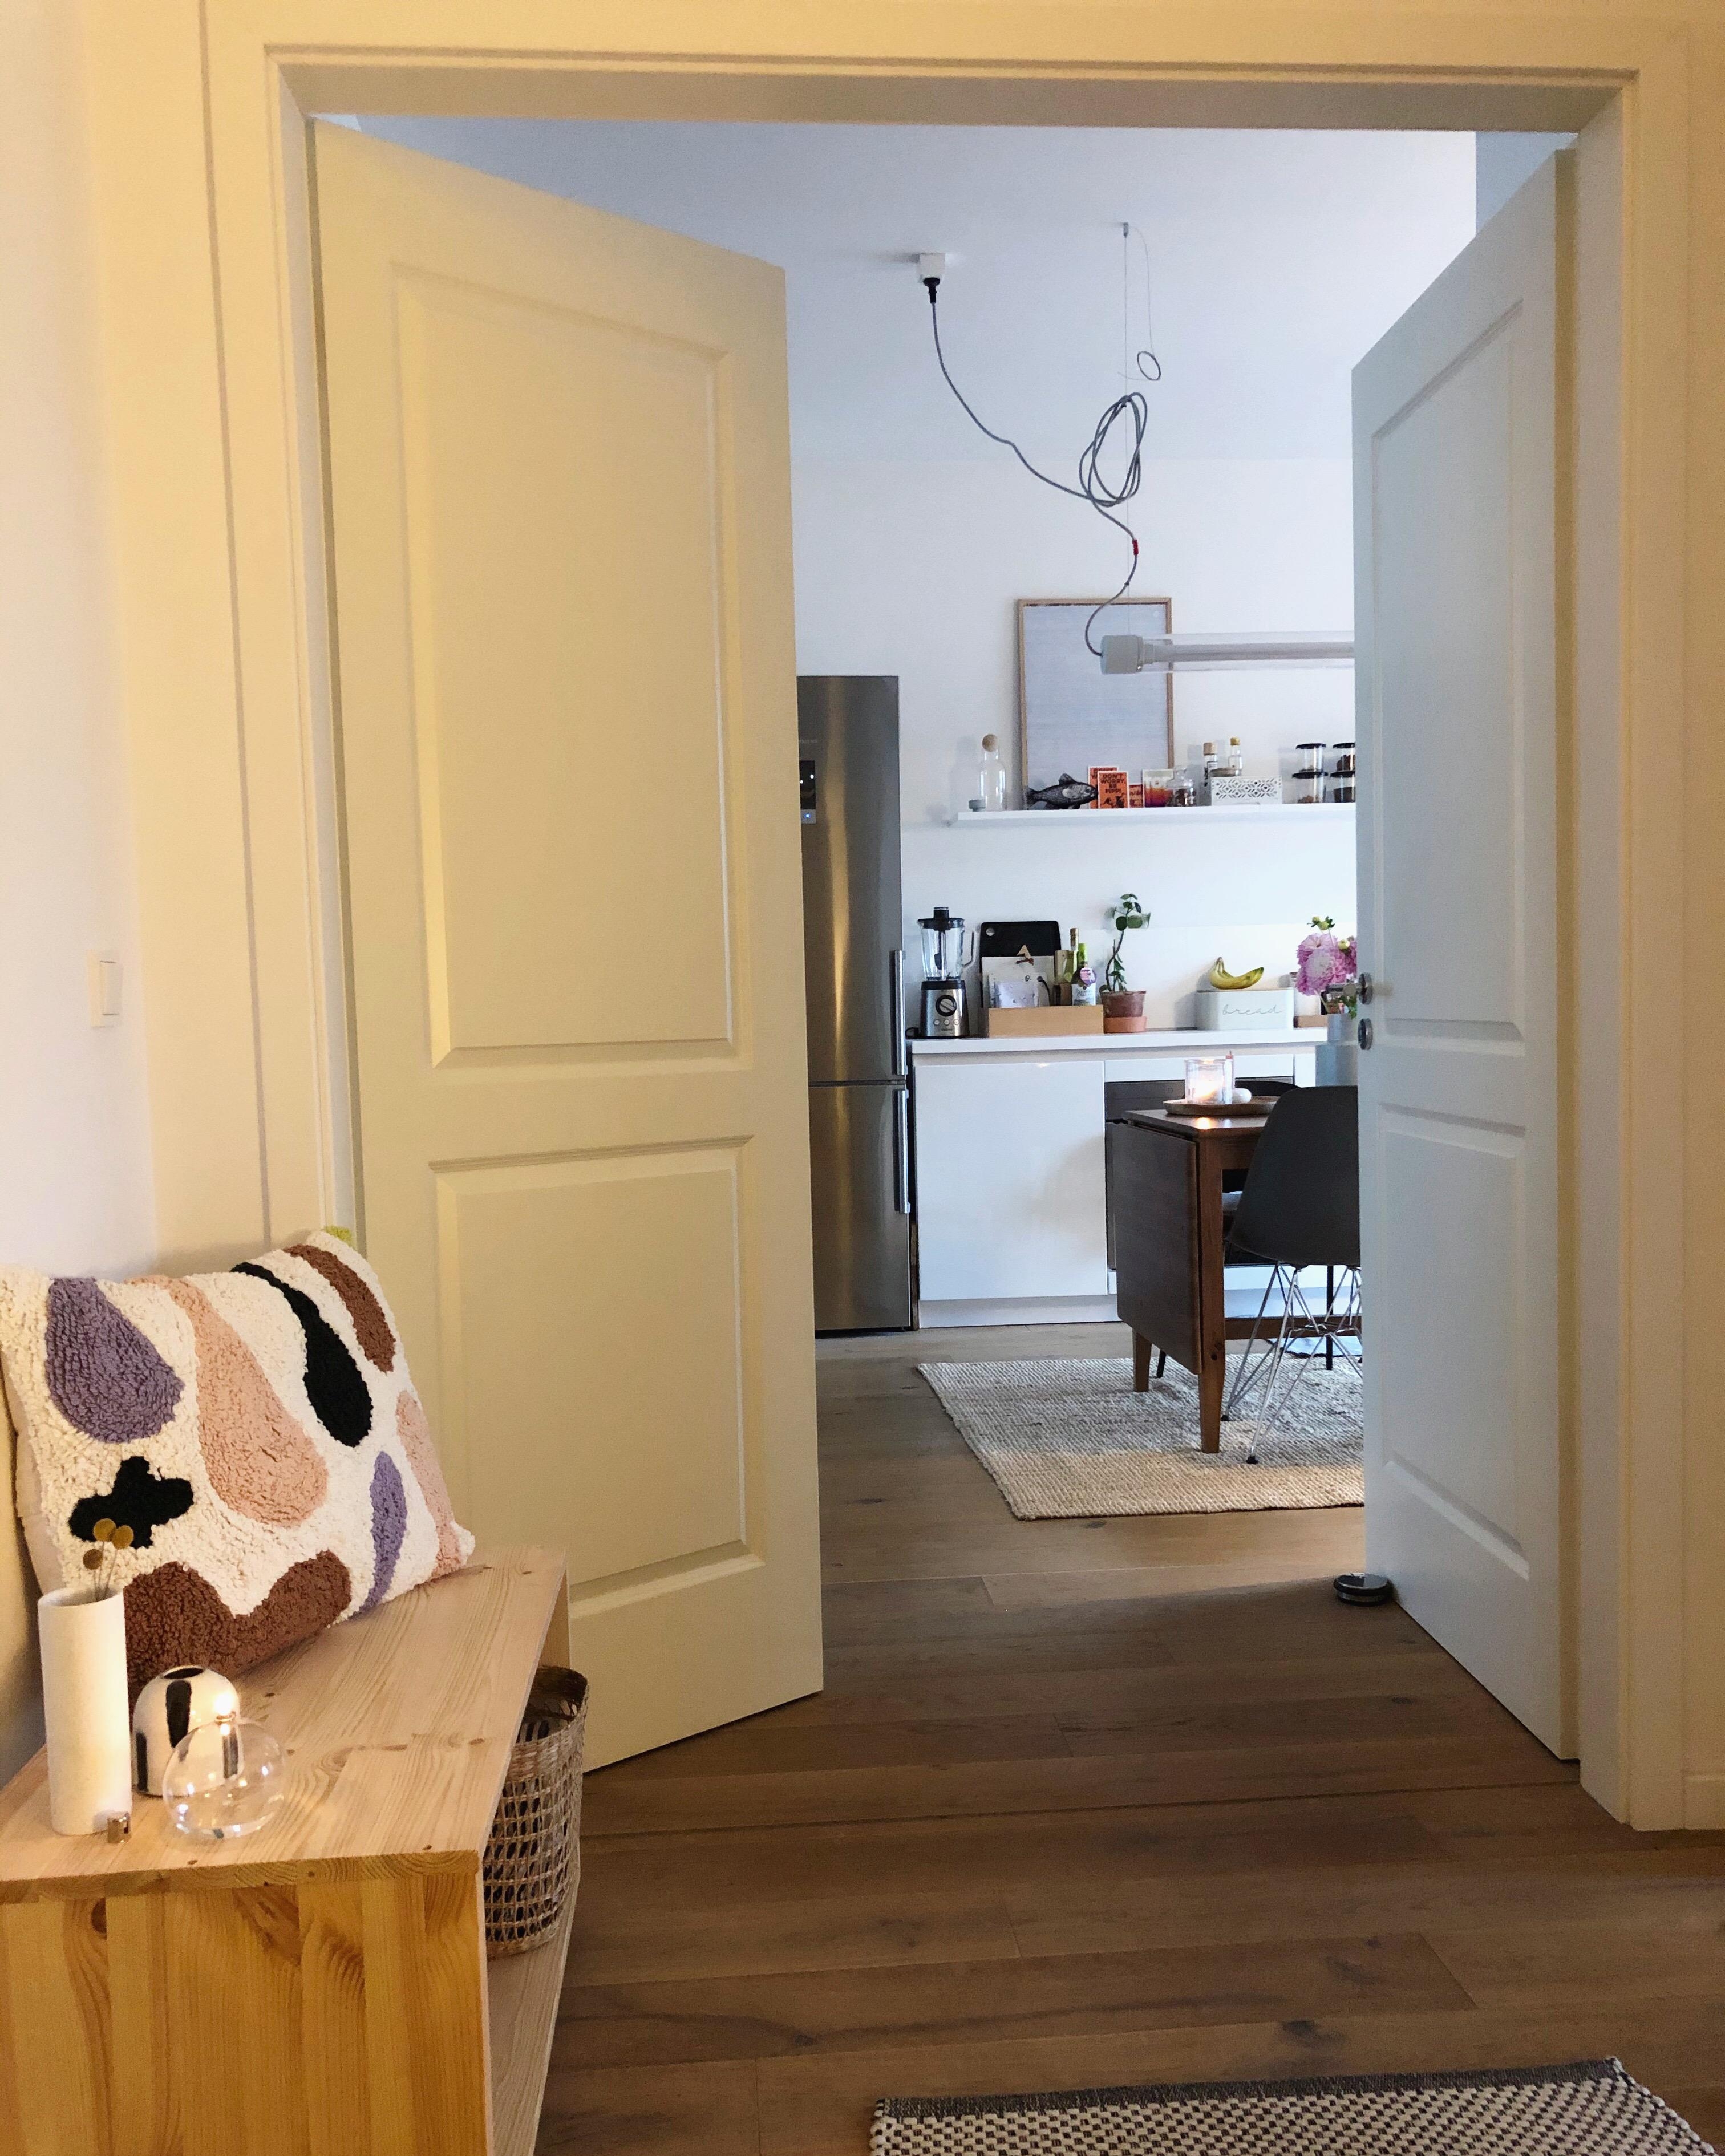 #Regentage ☔️ Wer liebt sie noch so? 
#home #flur #eingangsbereich #küche #interior #interiordesign #flügeltüre